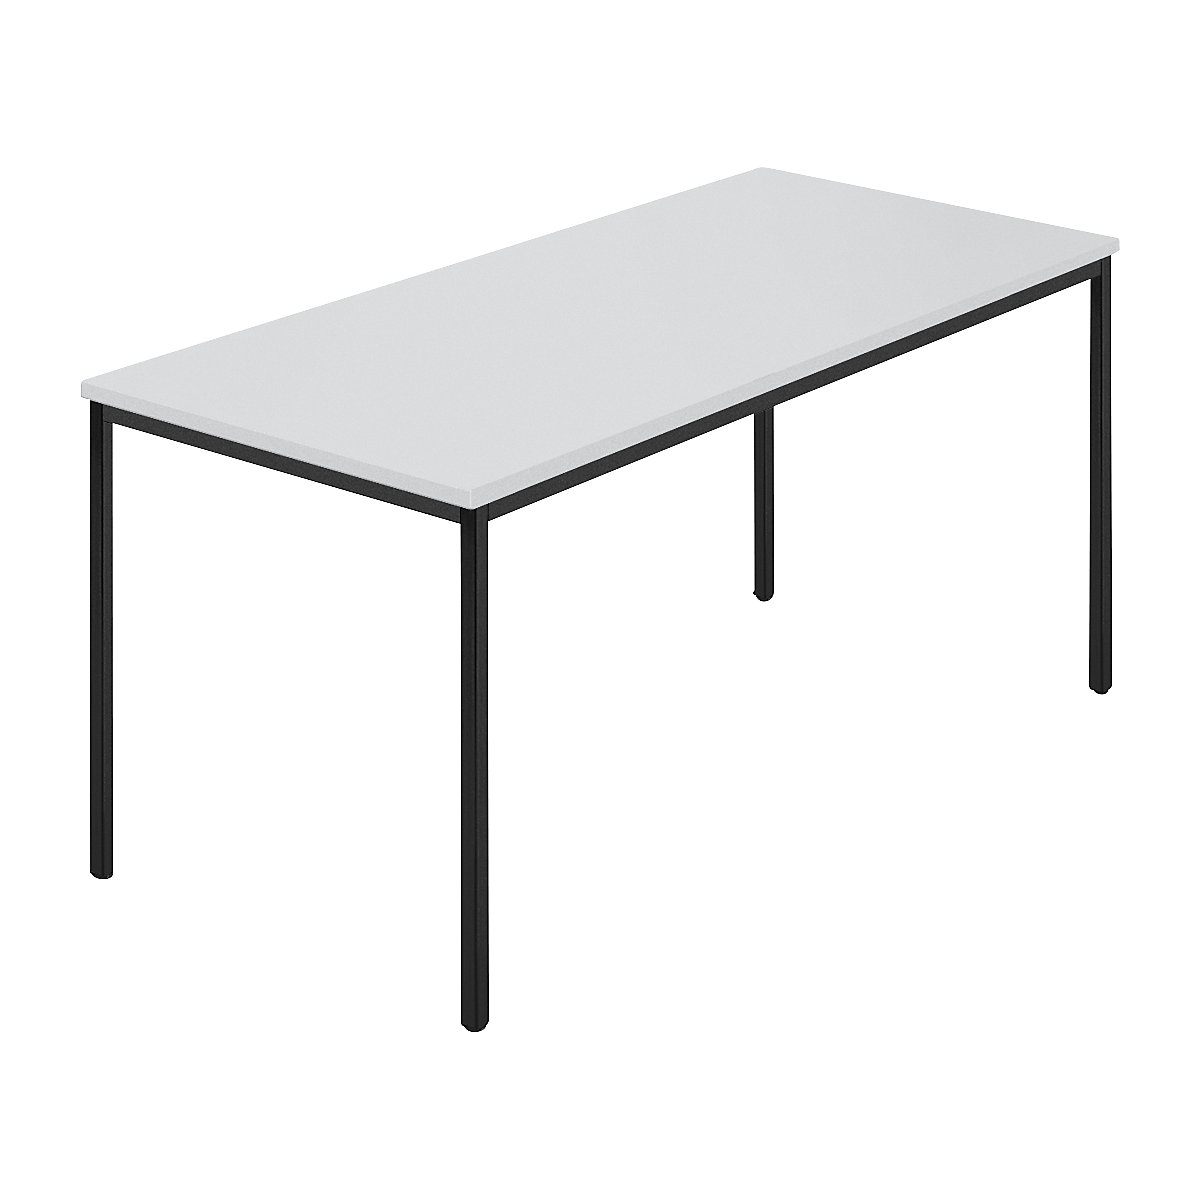 Pravokotna miza, štirikotna cev s premazom